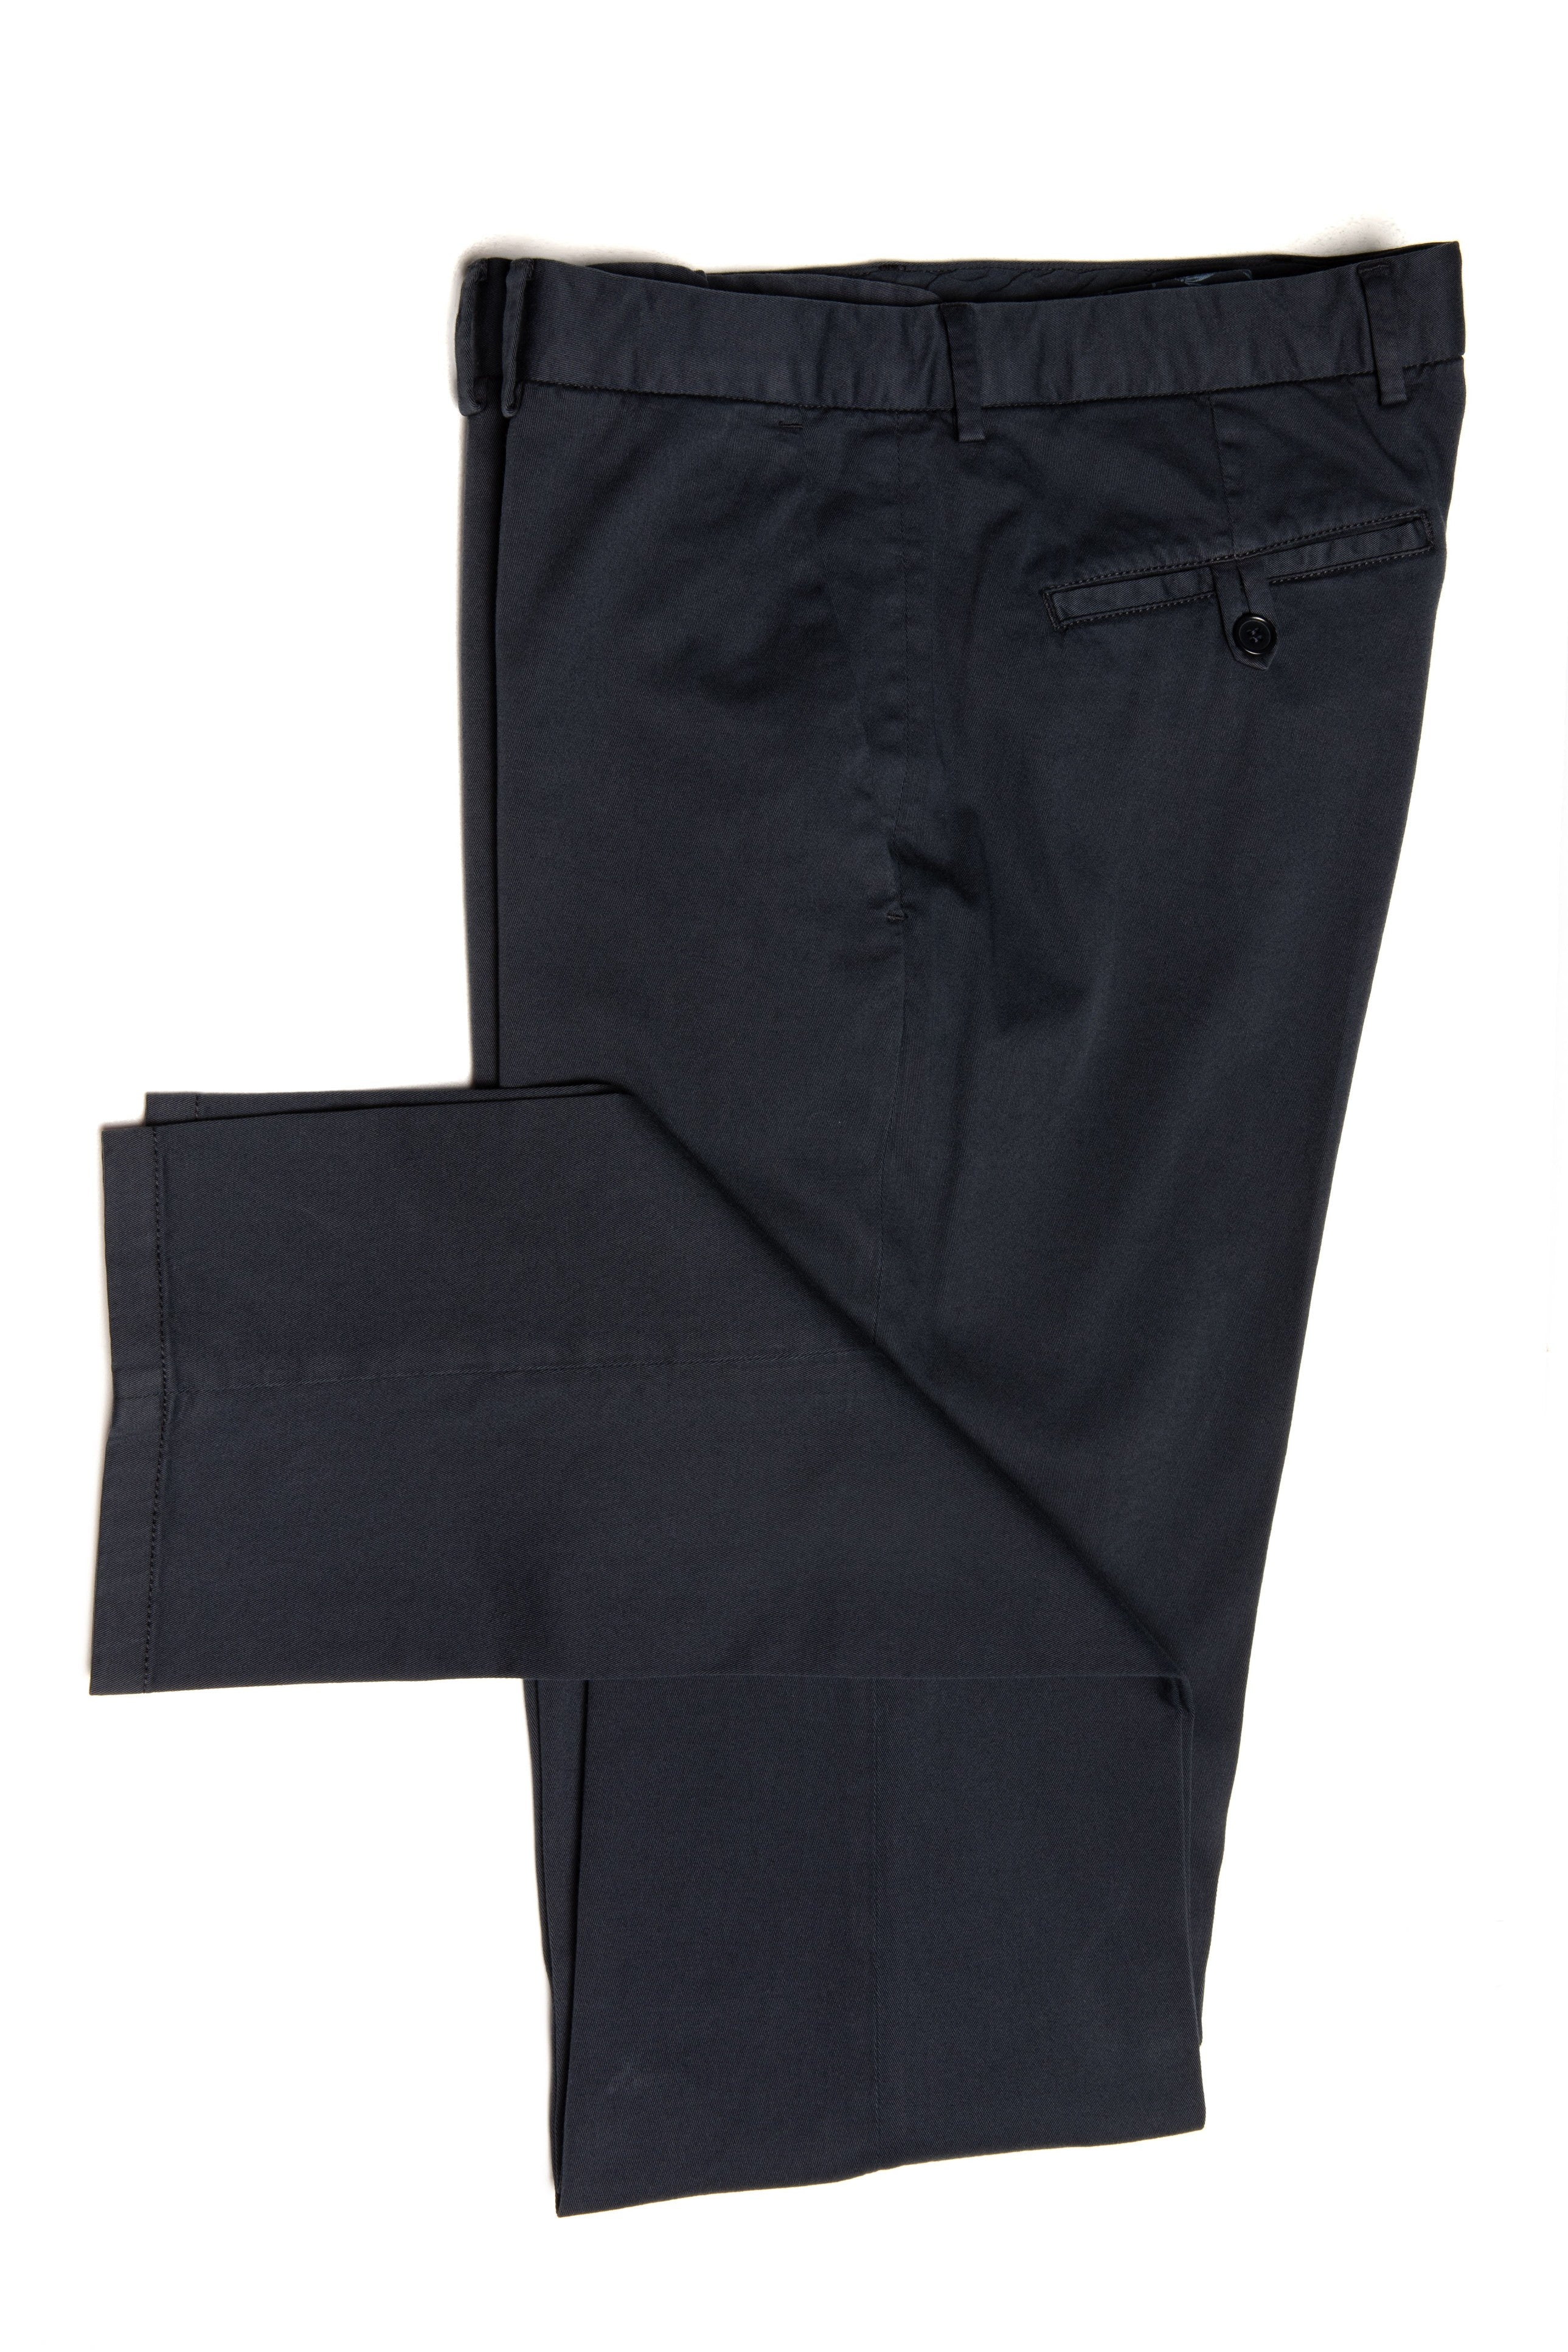 Pantaloni casual chino blu navy